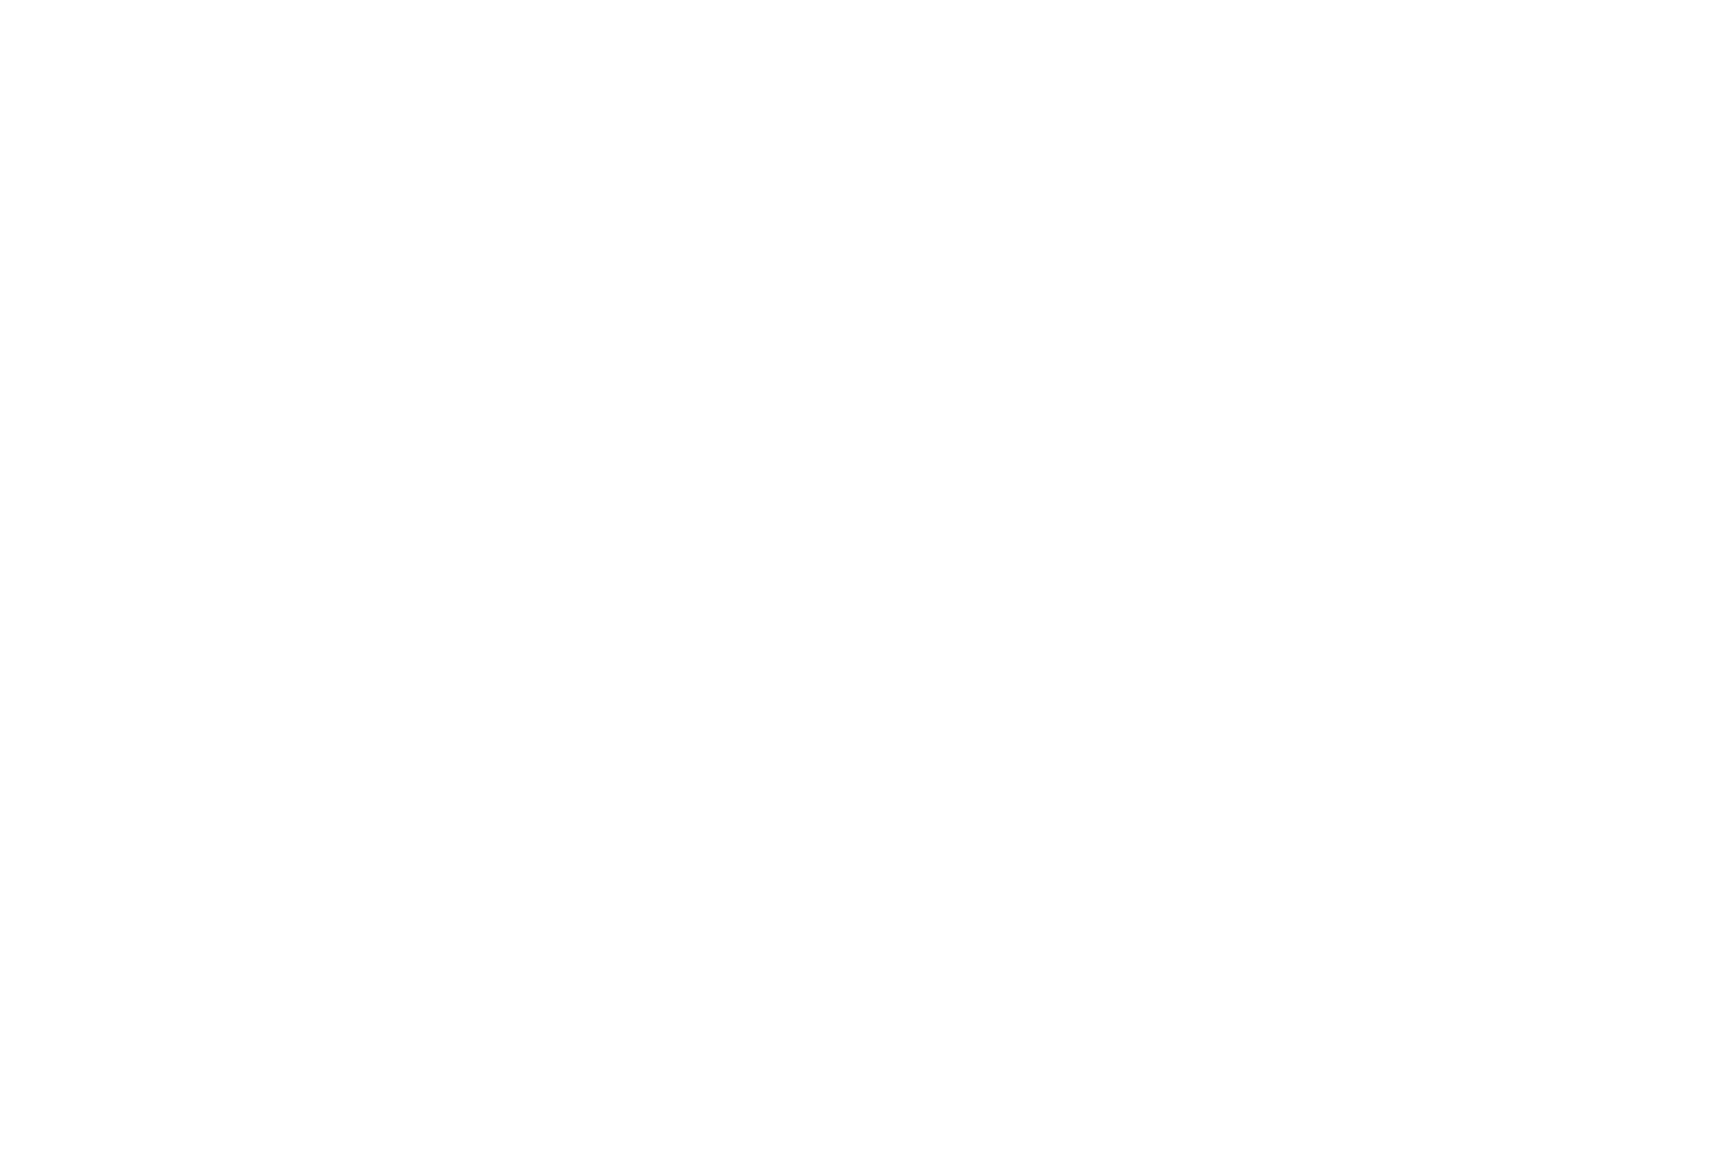 Best Film - Mumbai 9th Indian Cine Film Festival-21 - 2021 (1)